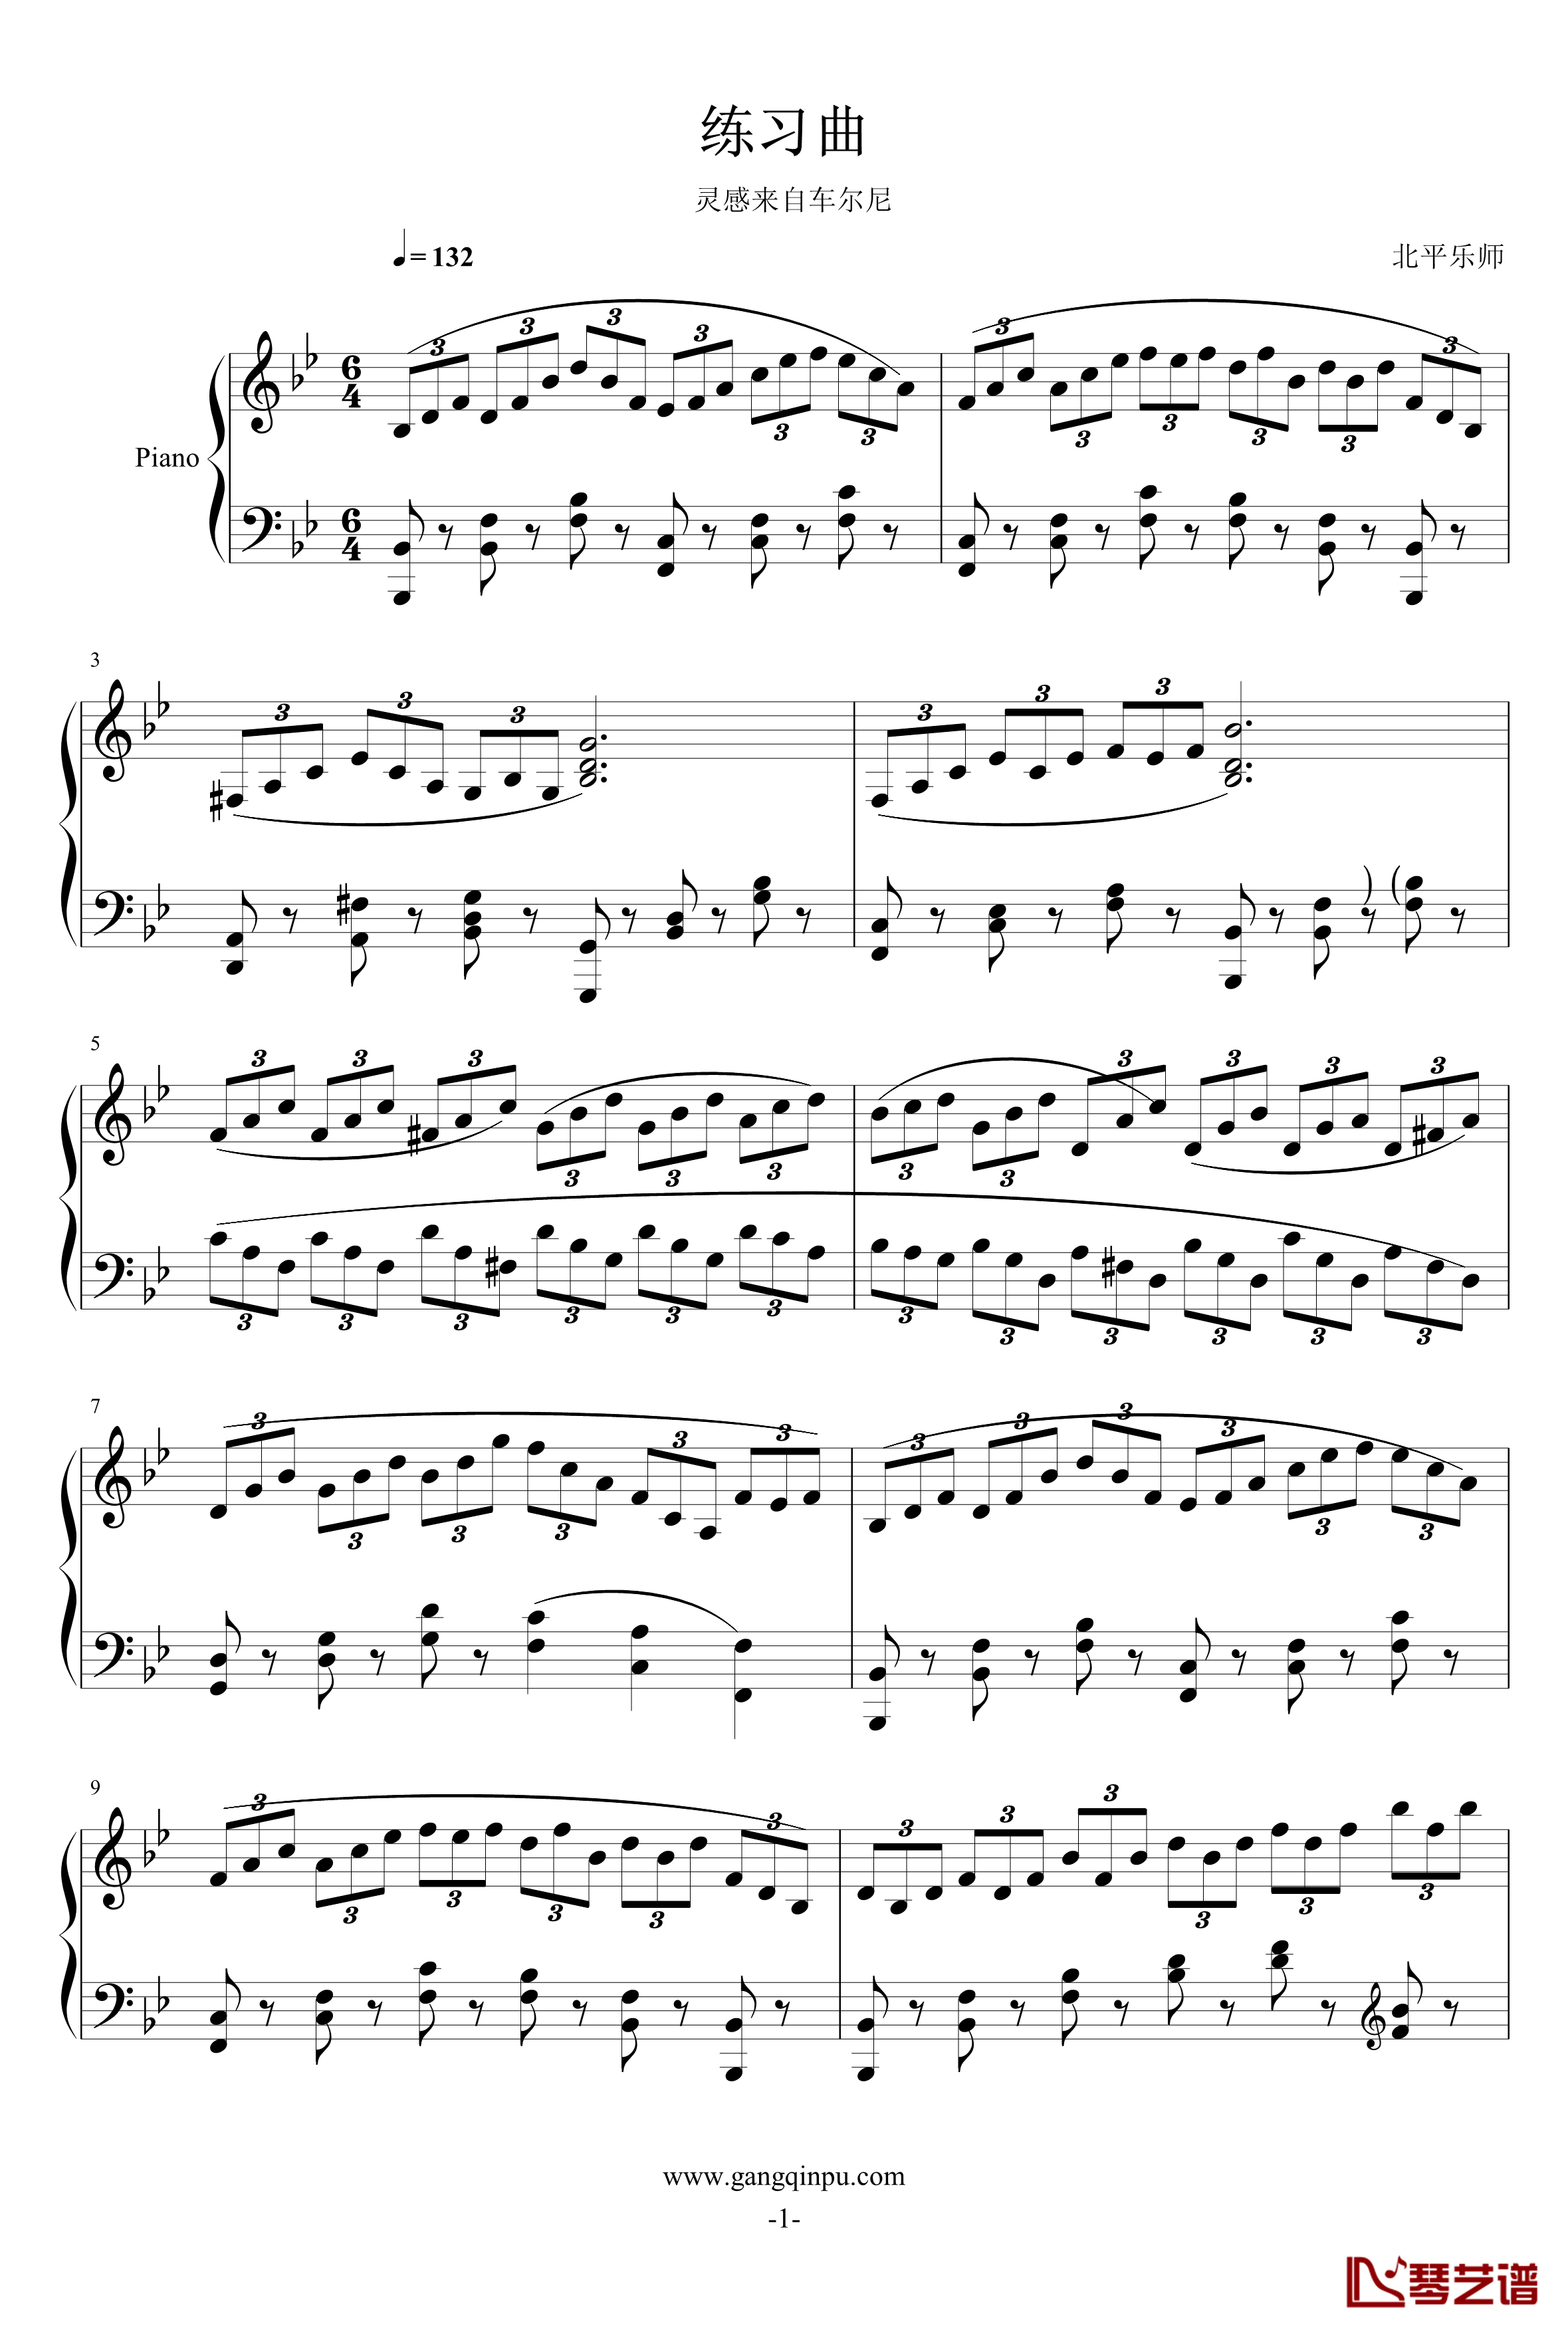 练习曲钢琴谱-北平乐师1